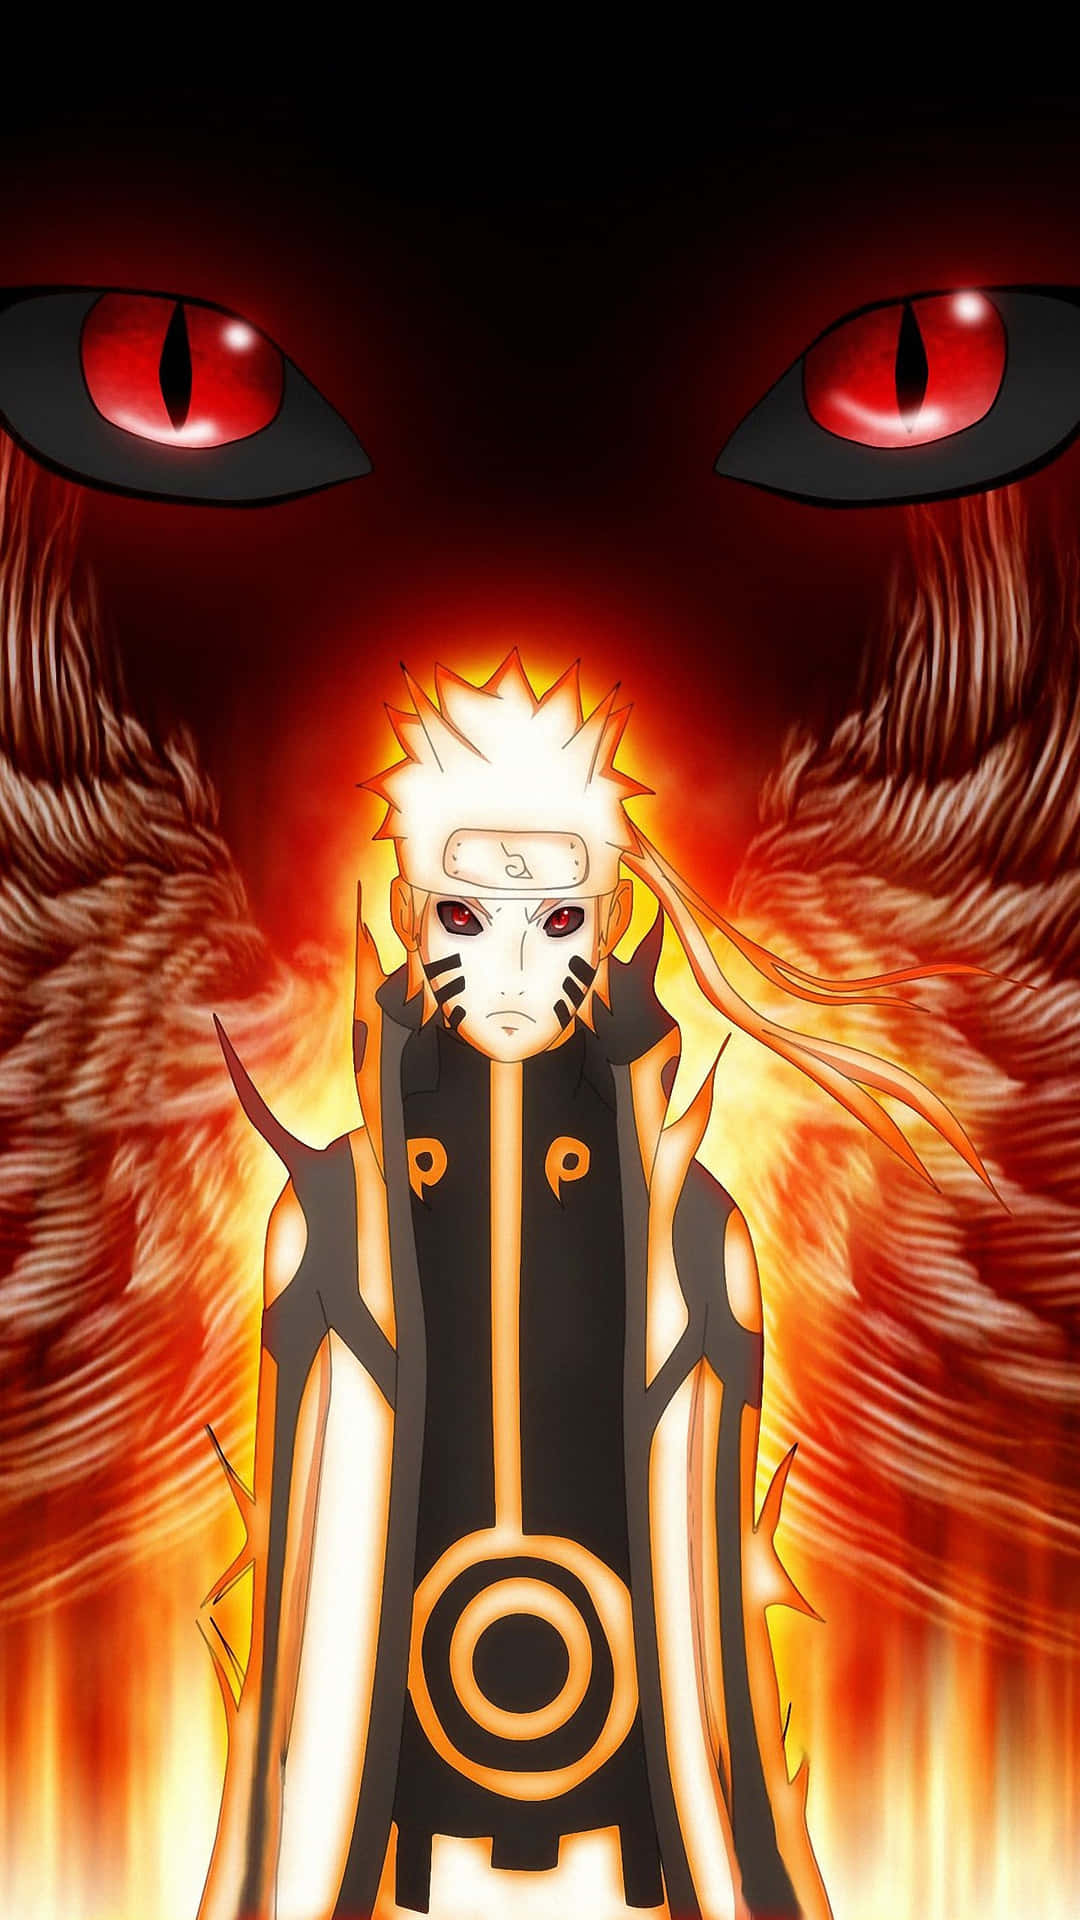 Imágenesgeniales De Naruto